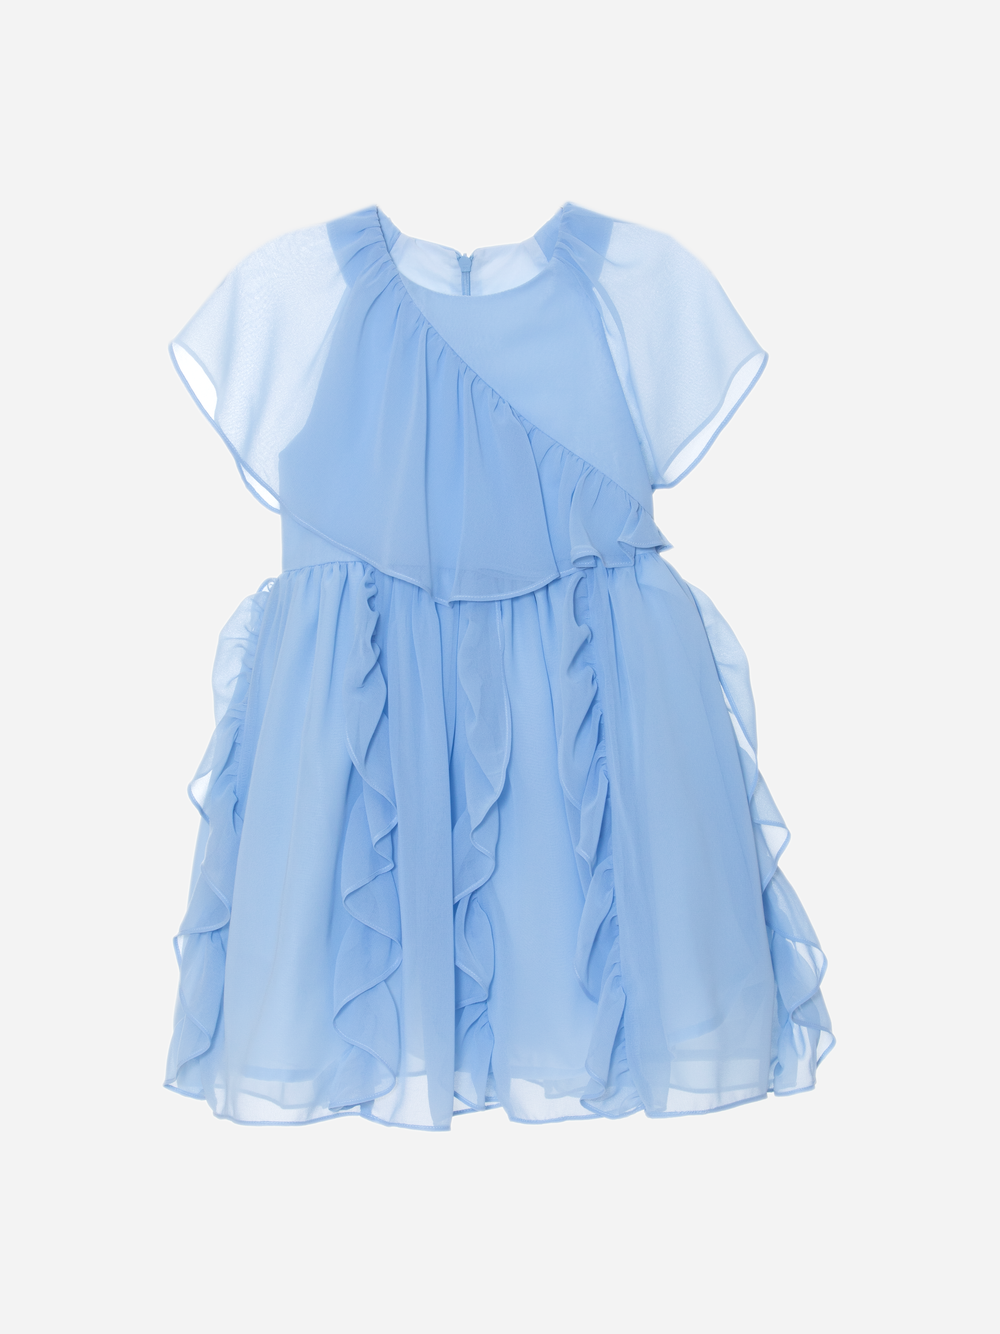 Girls light blue chiffon dress